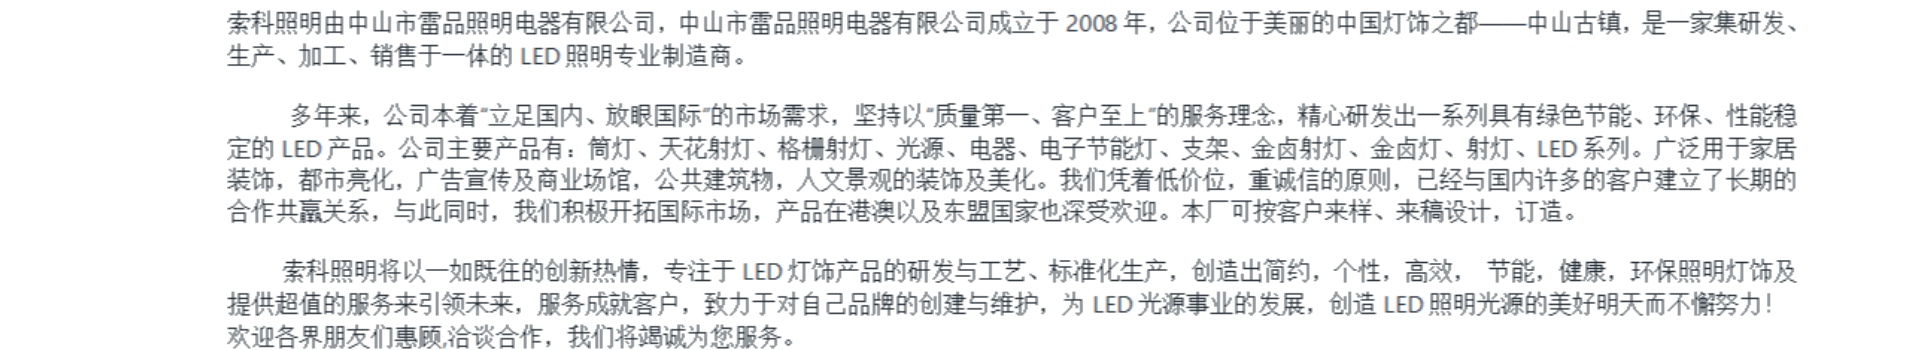 Zhongshan Suoke Lighting Electric Co., Ltd.